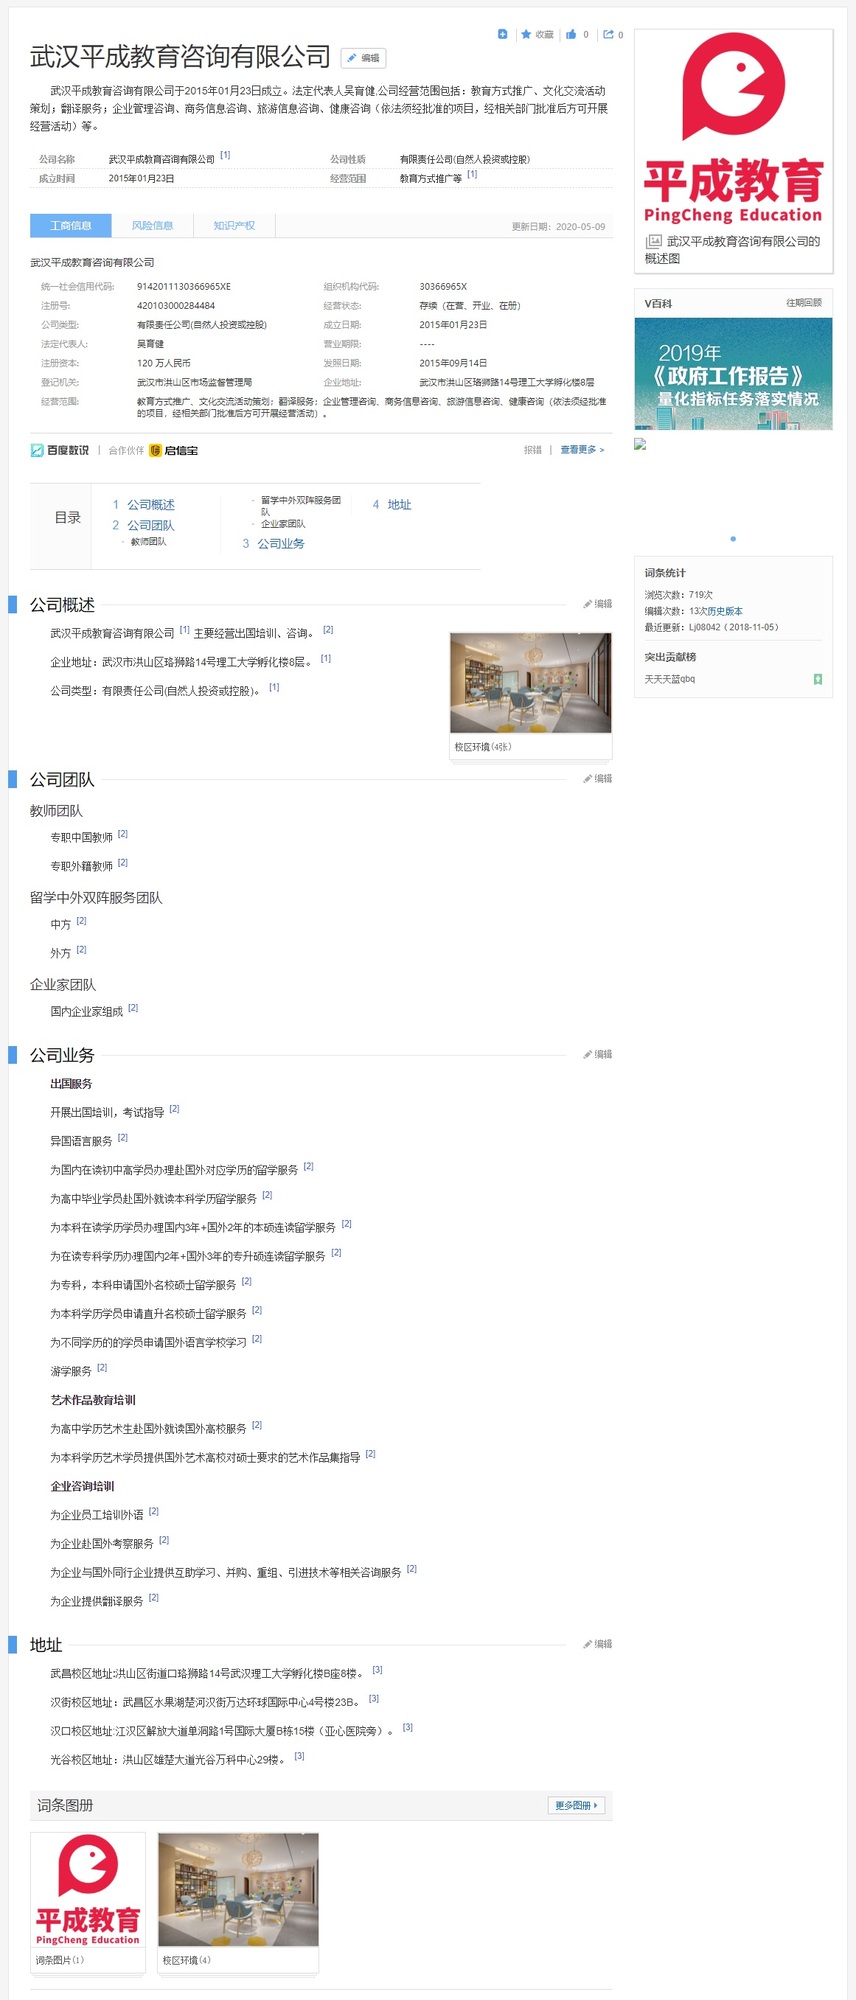 武汉平成教育咨询有限公司_百度百科.jpg